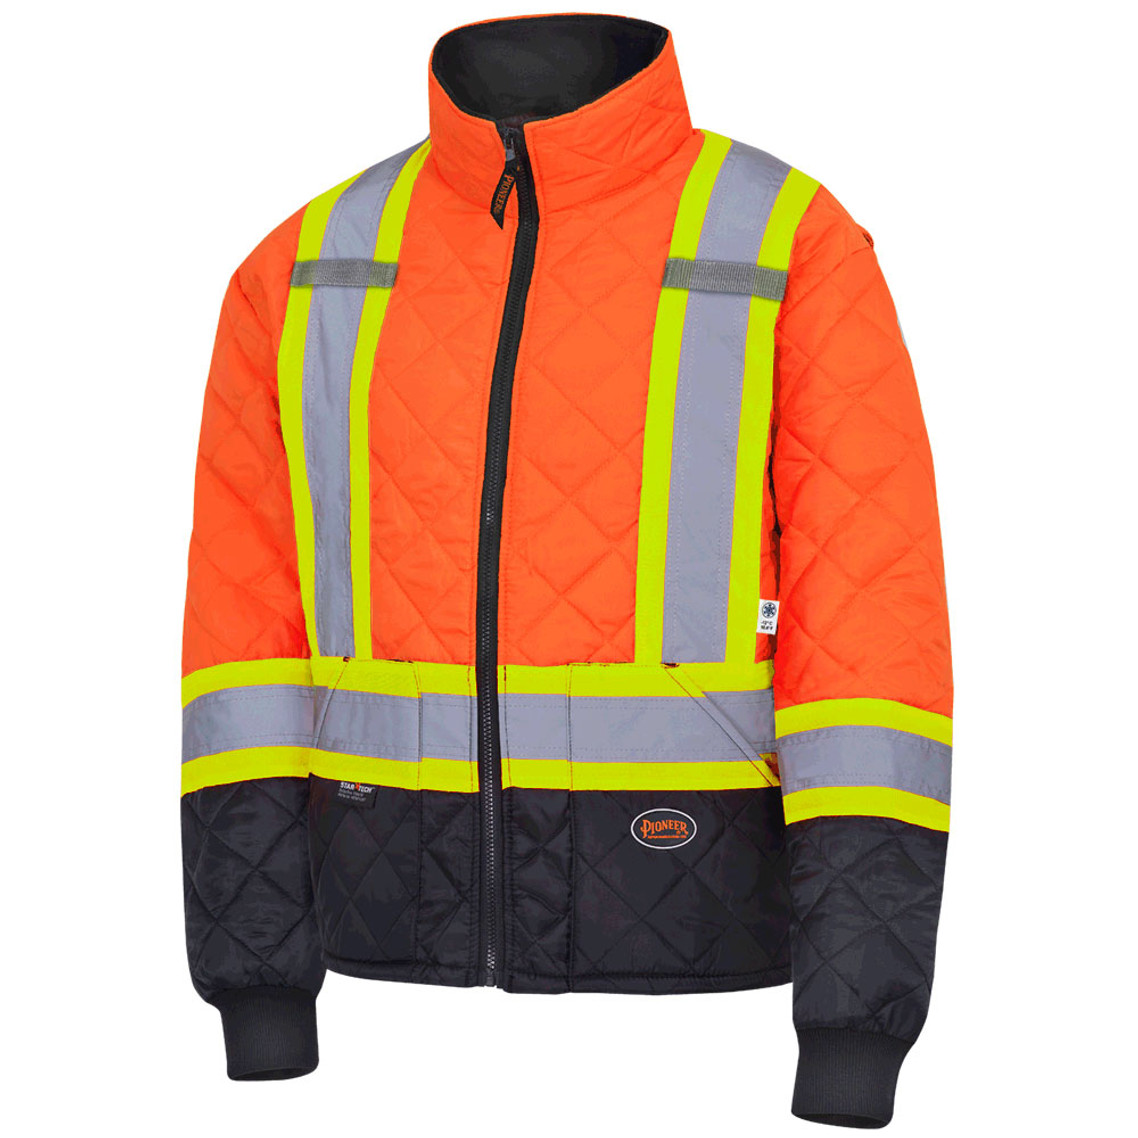 Pioneer 5015 Quilted Freezer/ Work Safety Jacket - Hi-Viz Orange | Safetywear.ca